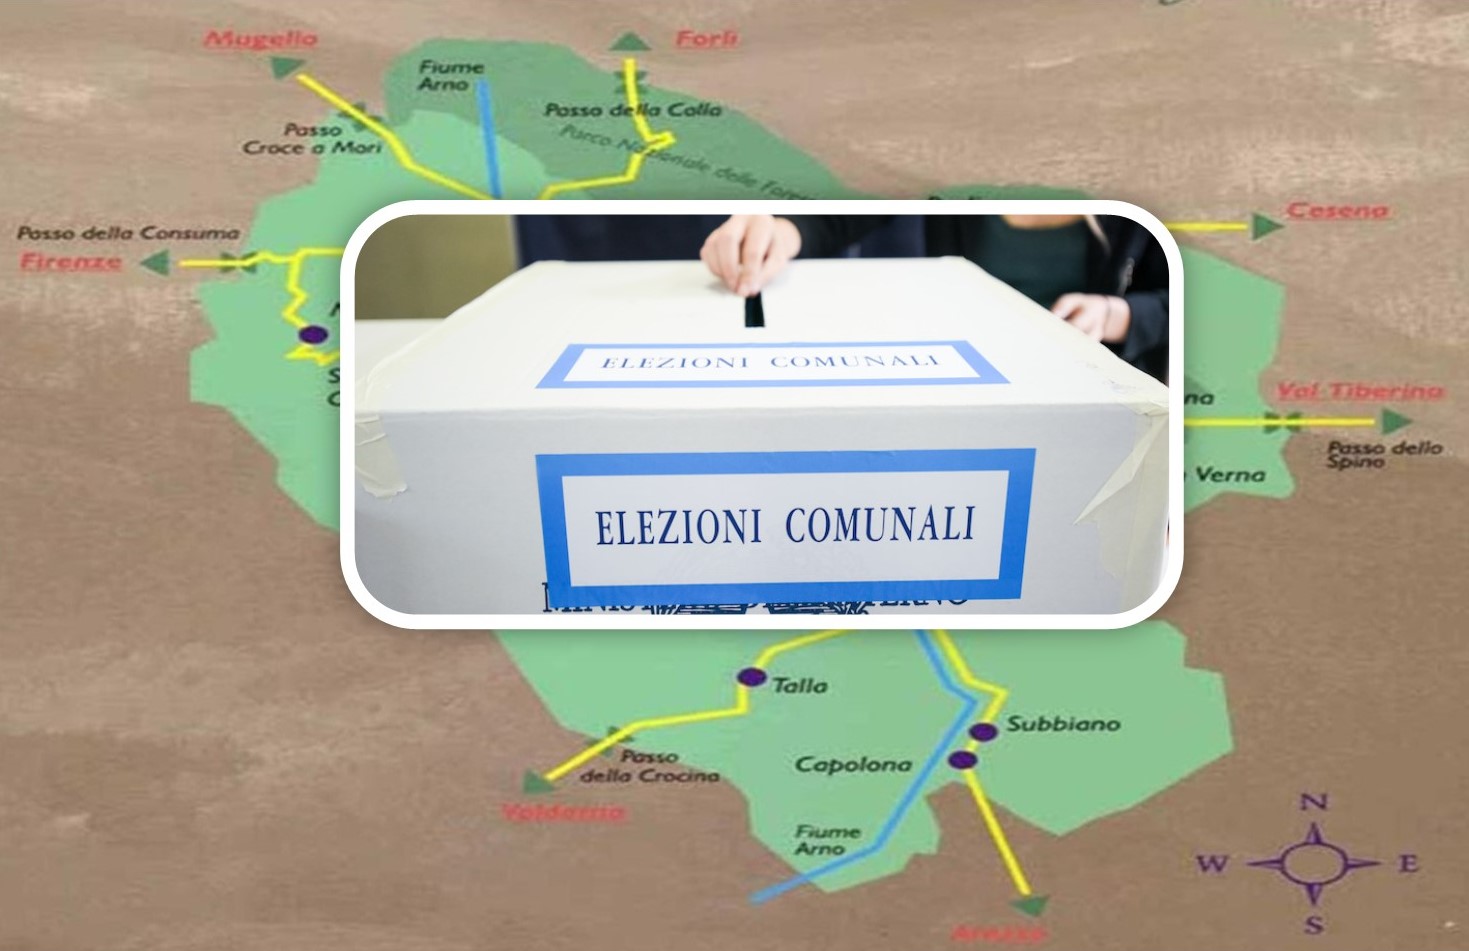 Elezioni in Casentino: elenco degli eletti e relative preferenze comune per comune